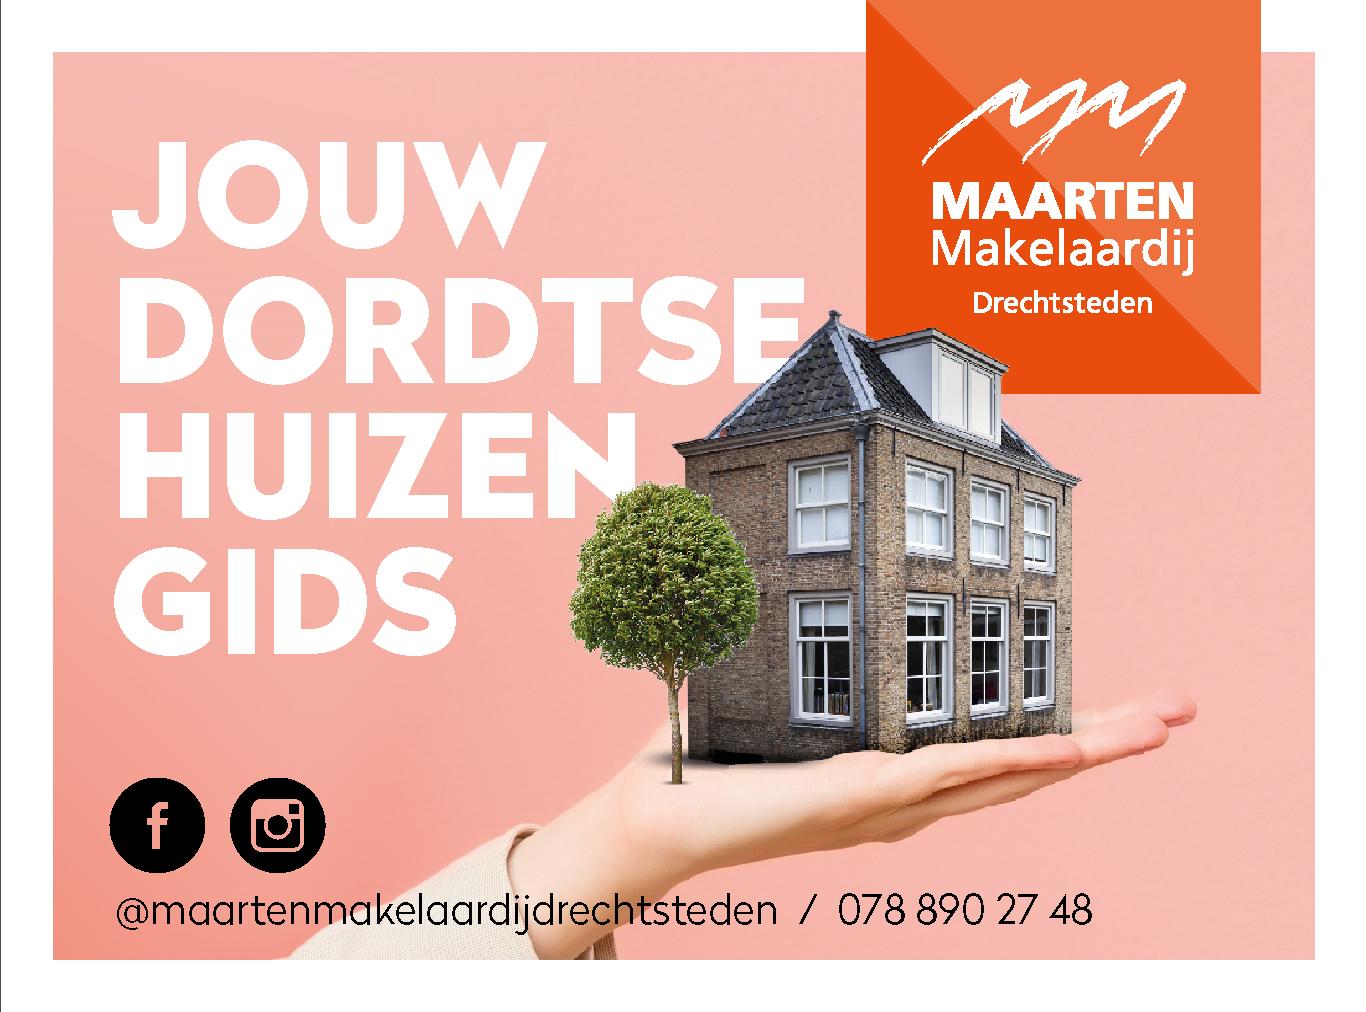 MAARTENMakelaardij Dordrecht